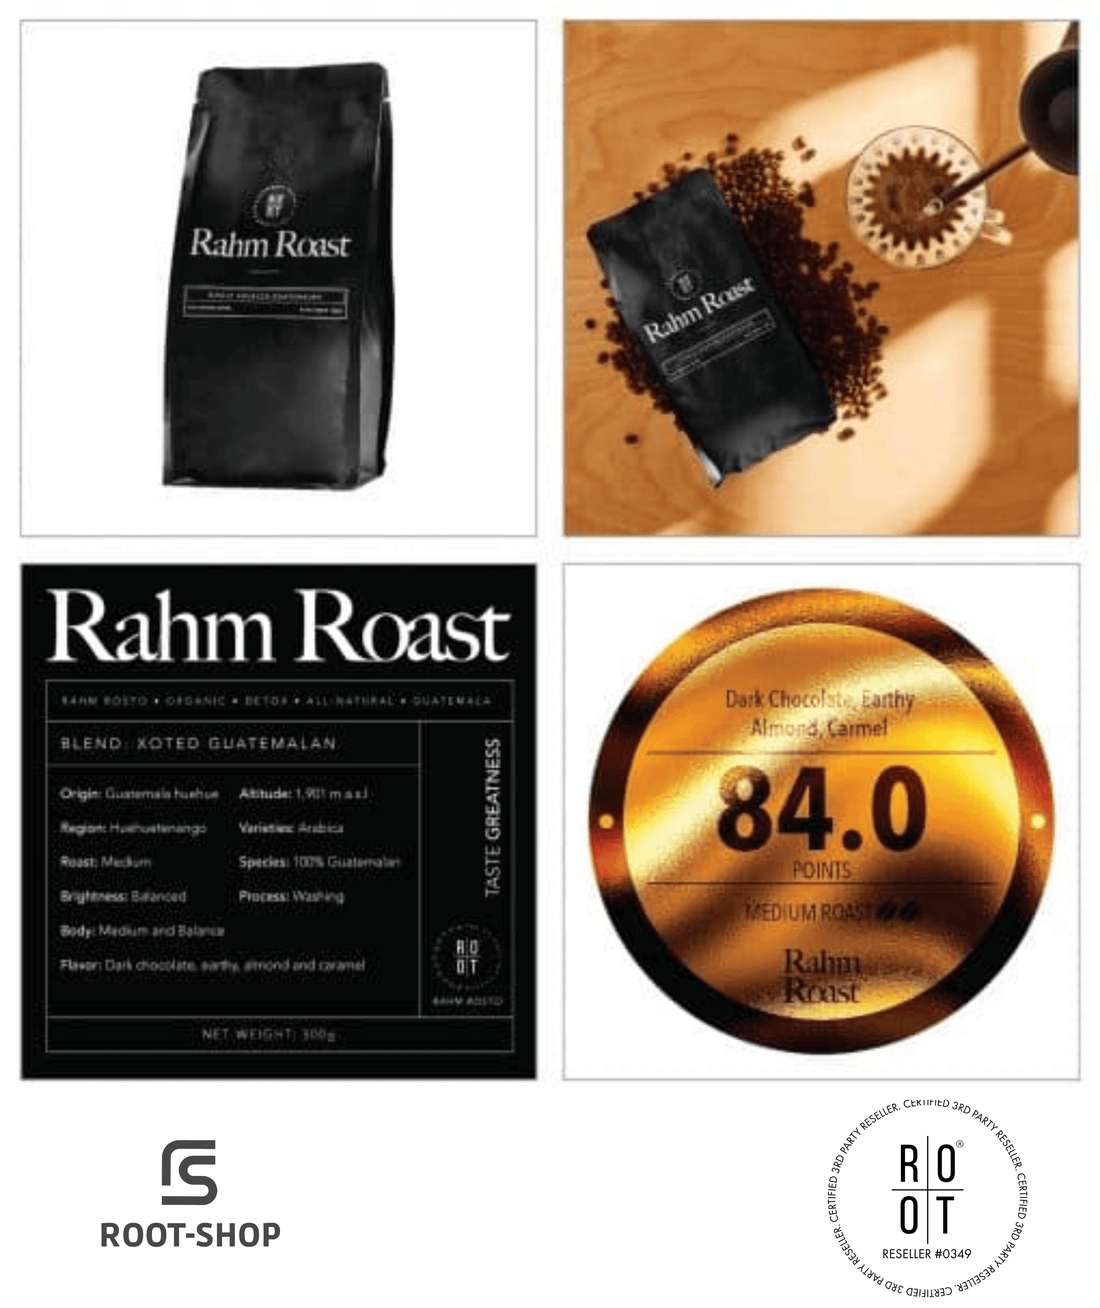 ROOT Rahm Roast Kaffee 1 Pack - ROOT-SHOP